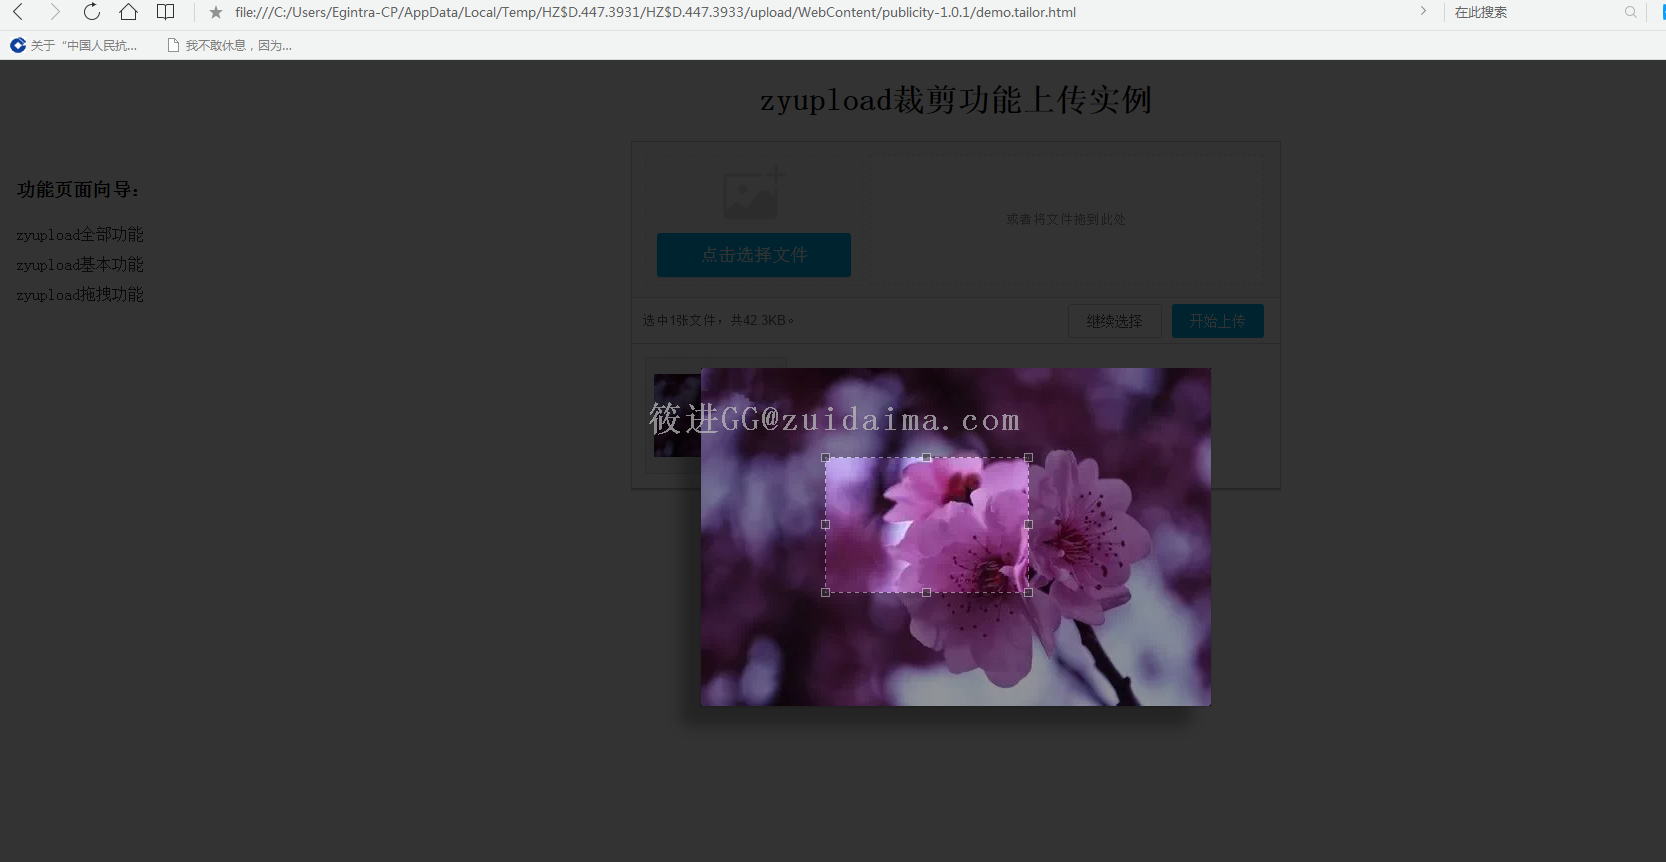 ssh框架开发图片上传和图片显示到网页上-代码-最代码